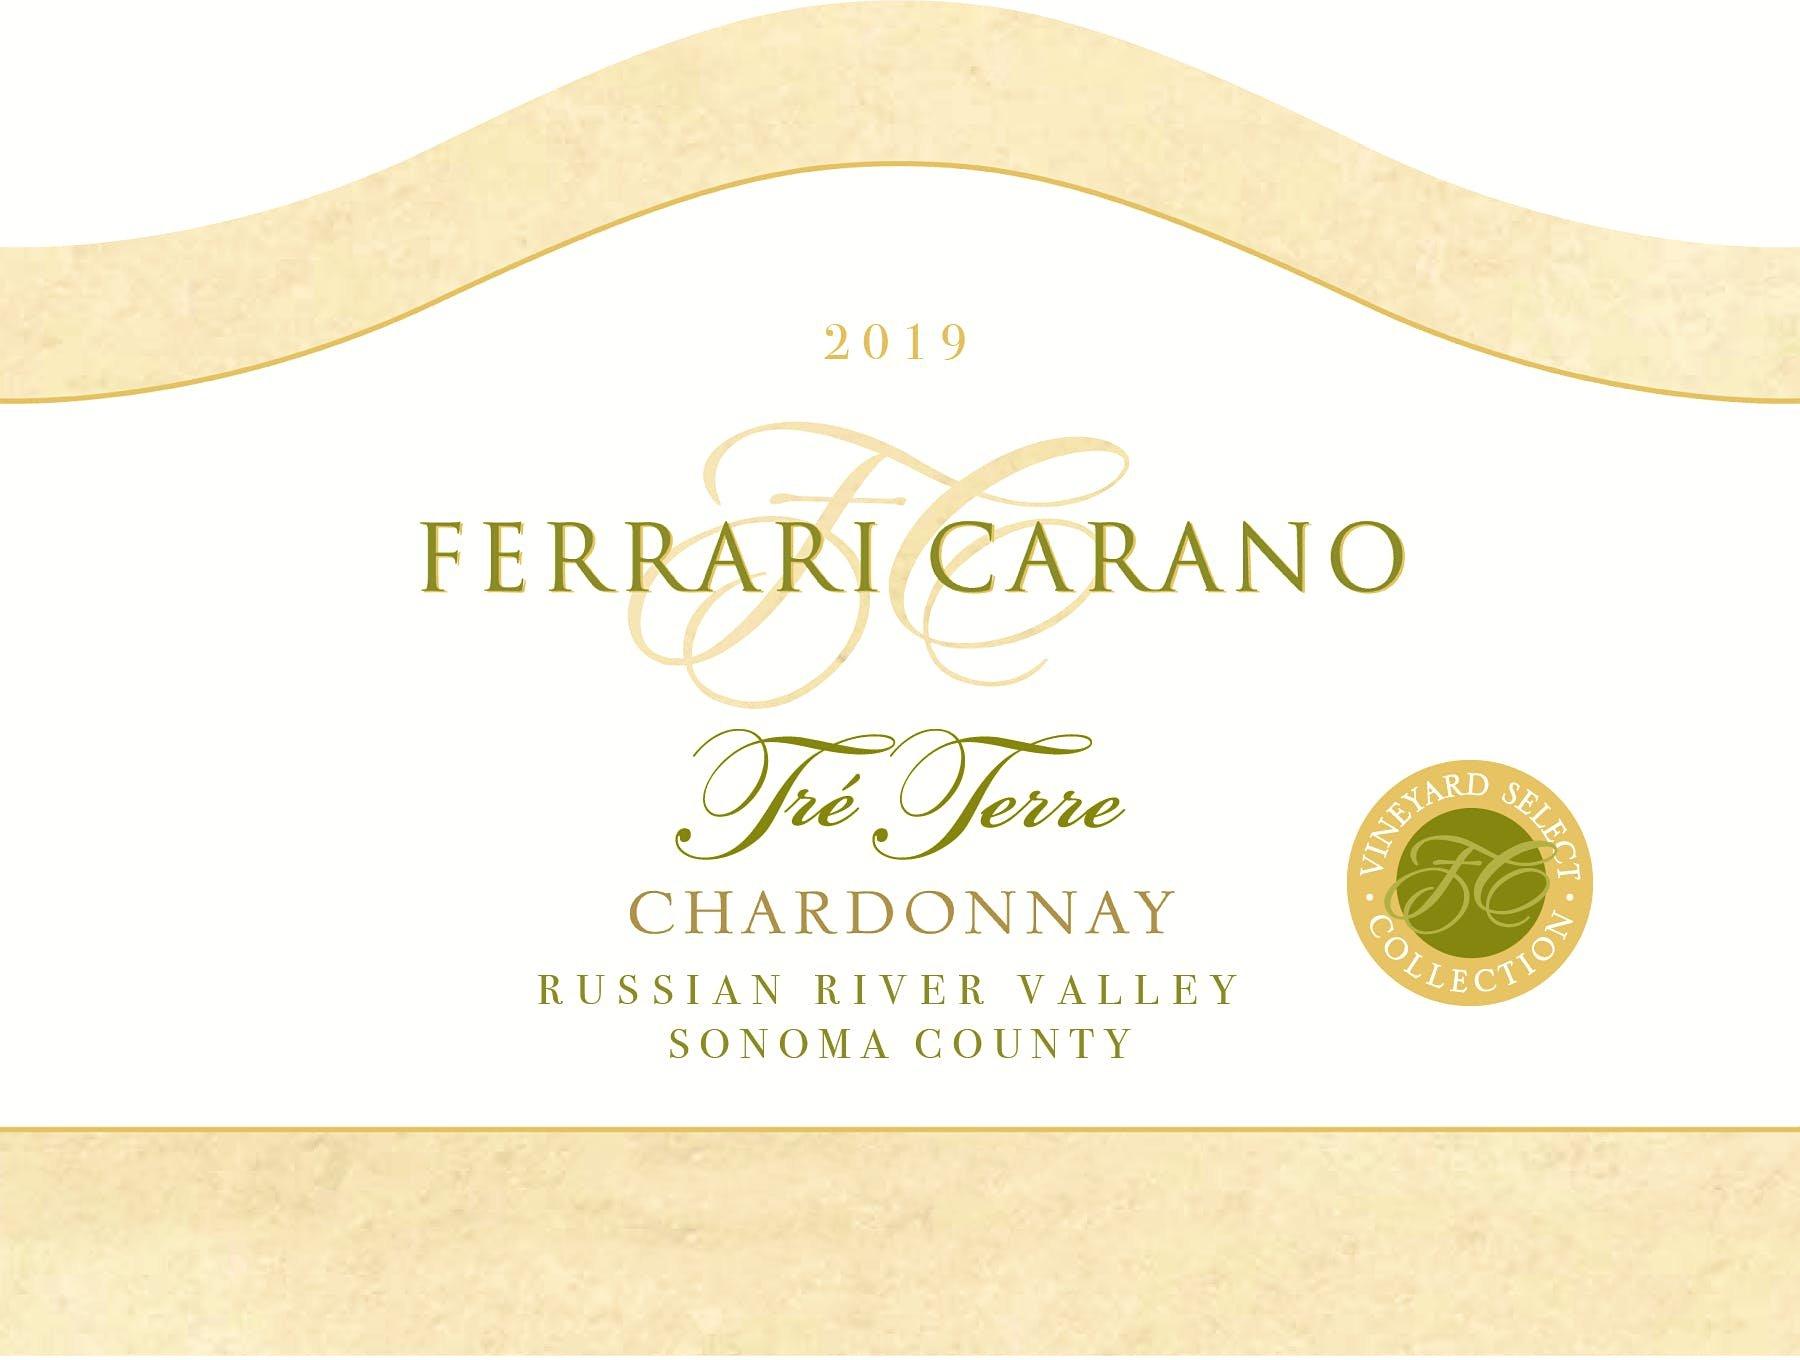 Ferrari Carano 2019 Chardonnay, Tre Terre, Russian River Valley